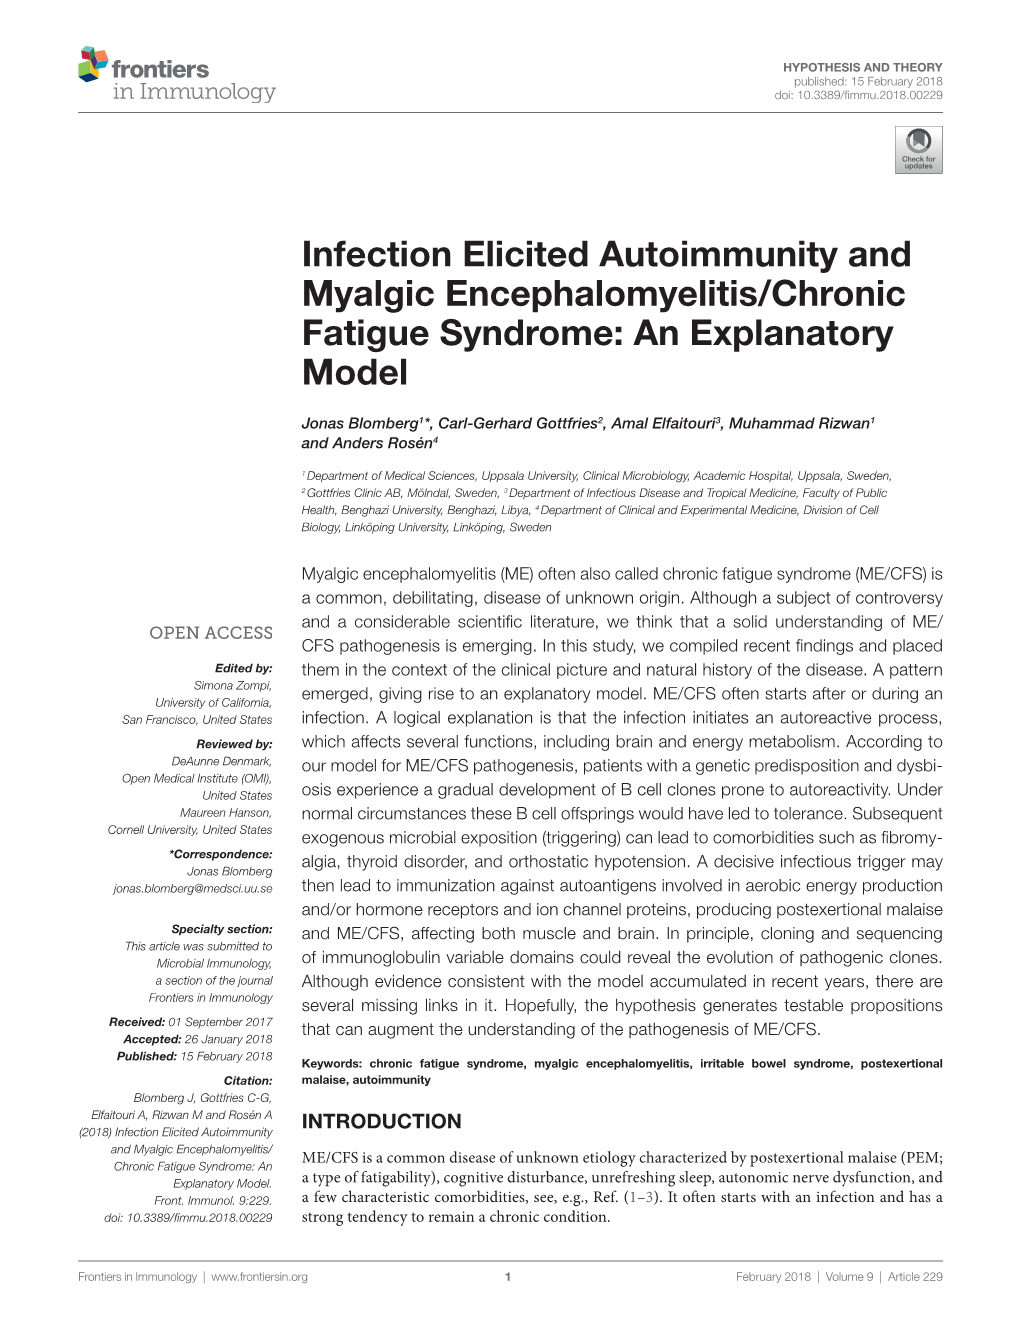 Infection Elicited Autoimmunity and Myalgic Encephalomyelitis/Chronic Fatigue Syndrome: an Explanatory Model